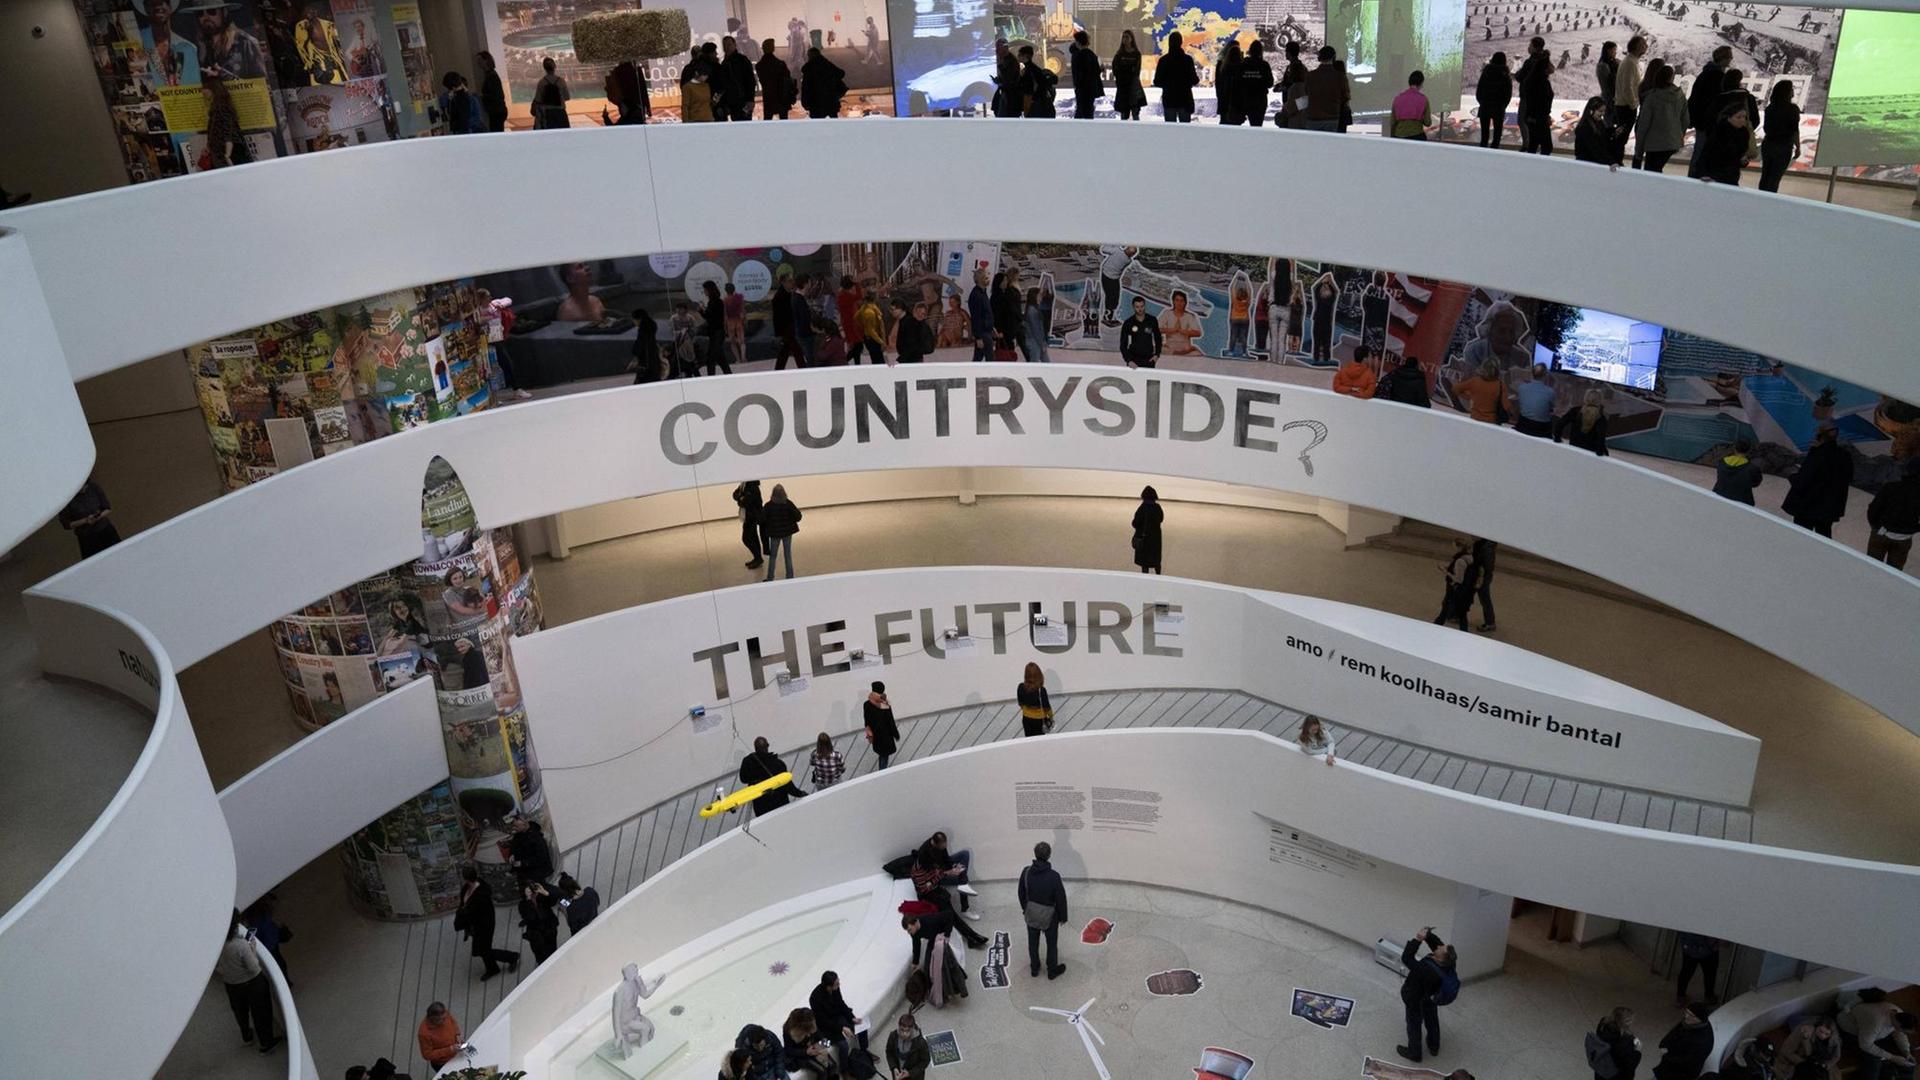 Besucher der Ausstellung "Countryside – The Future" des Architekten Rem Koolhaas im Guggenheim-Museum New York.